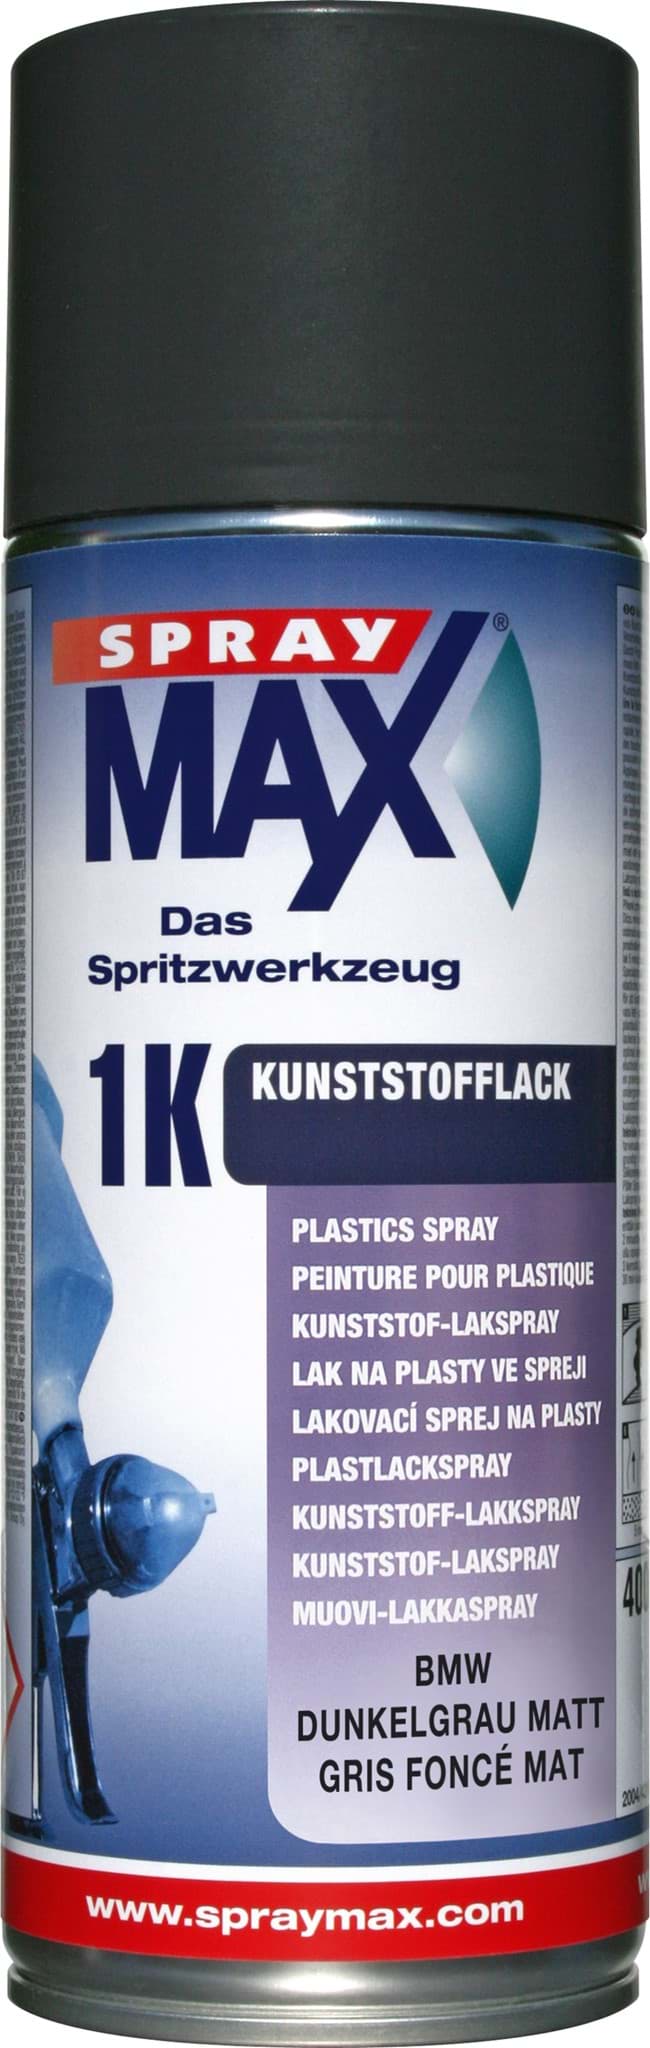 Afbeelding van SprayMax 1K Kunststofflack BMW dunkelgrau